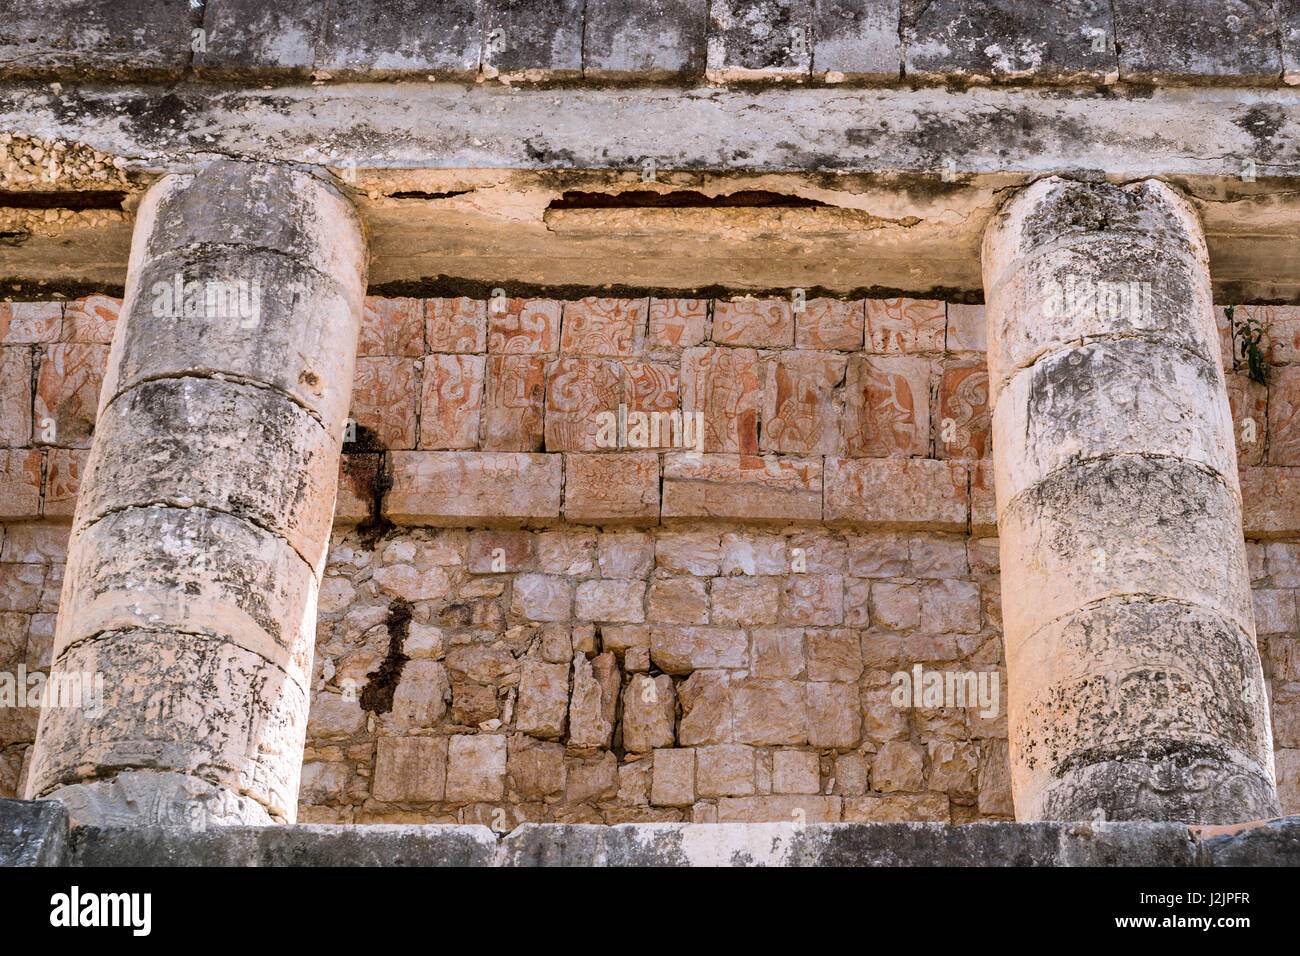 Templo del Hombre Barbado ("Tempel des bärtigen Mannes") genannt, weil ein Flachrelief eines bärtigen Herrn, sehr ungewöhnlich für Maya-Kunst, in Chichén Itzá Stockfoto